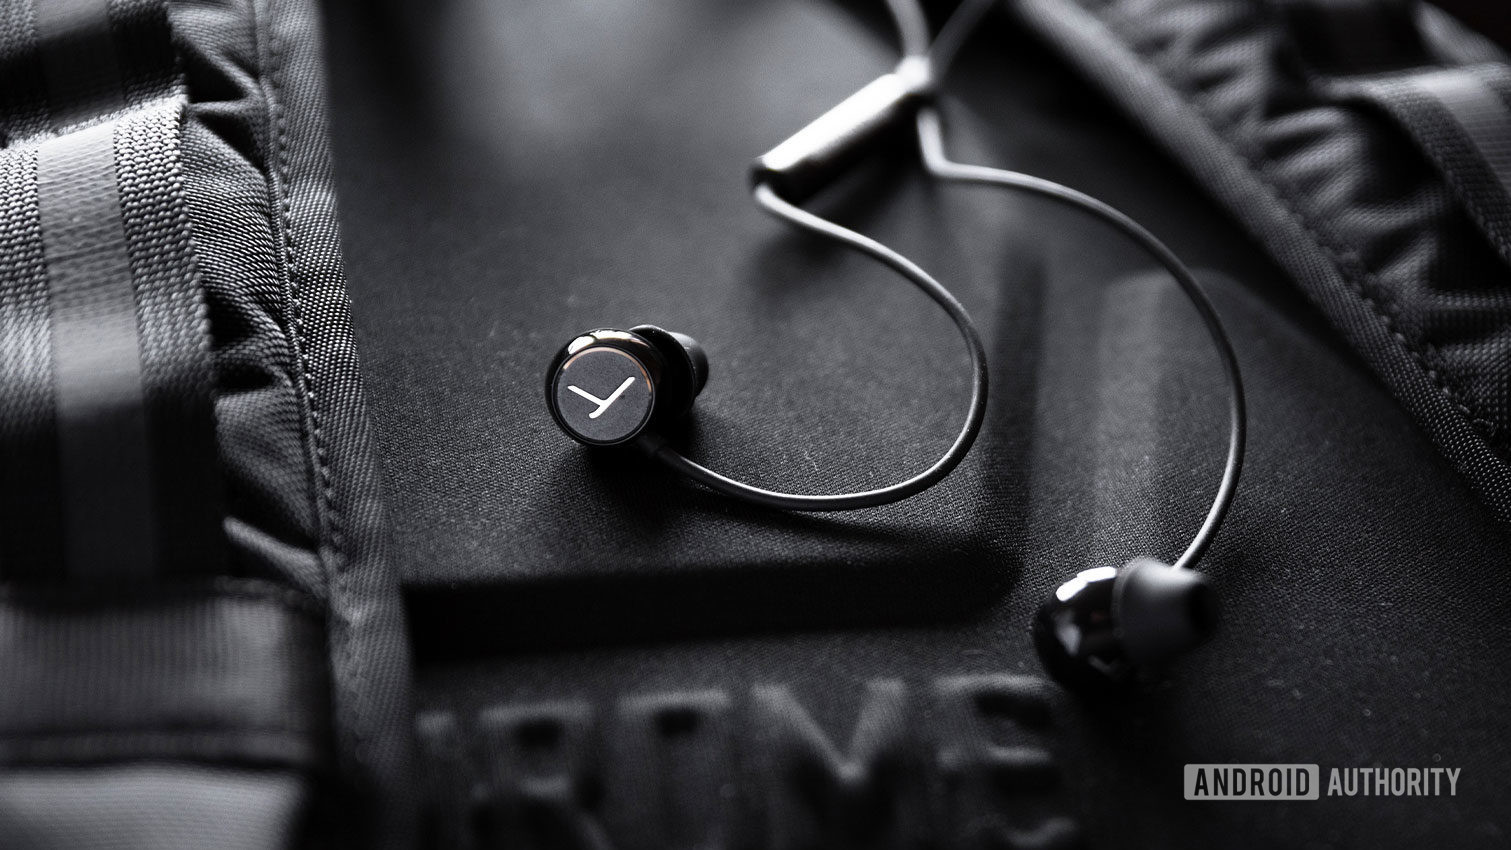 The Beyerdynamic Soul Byrd wired earphones in black against a black backpack.